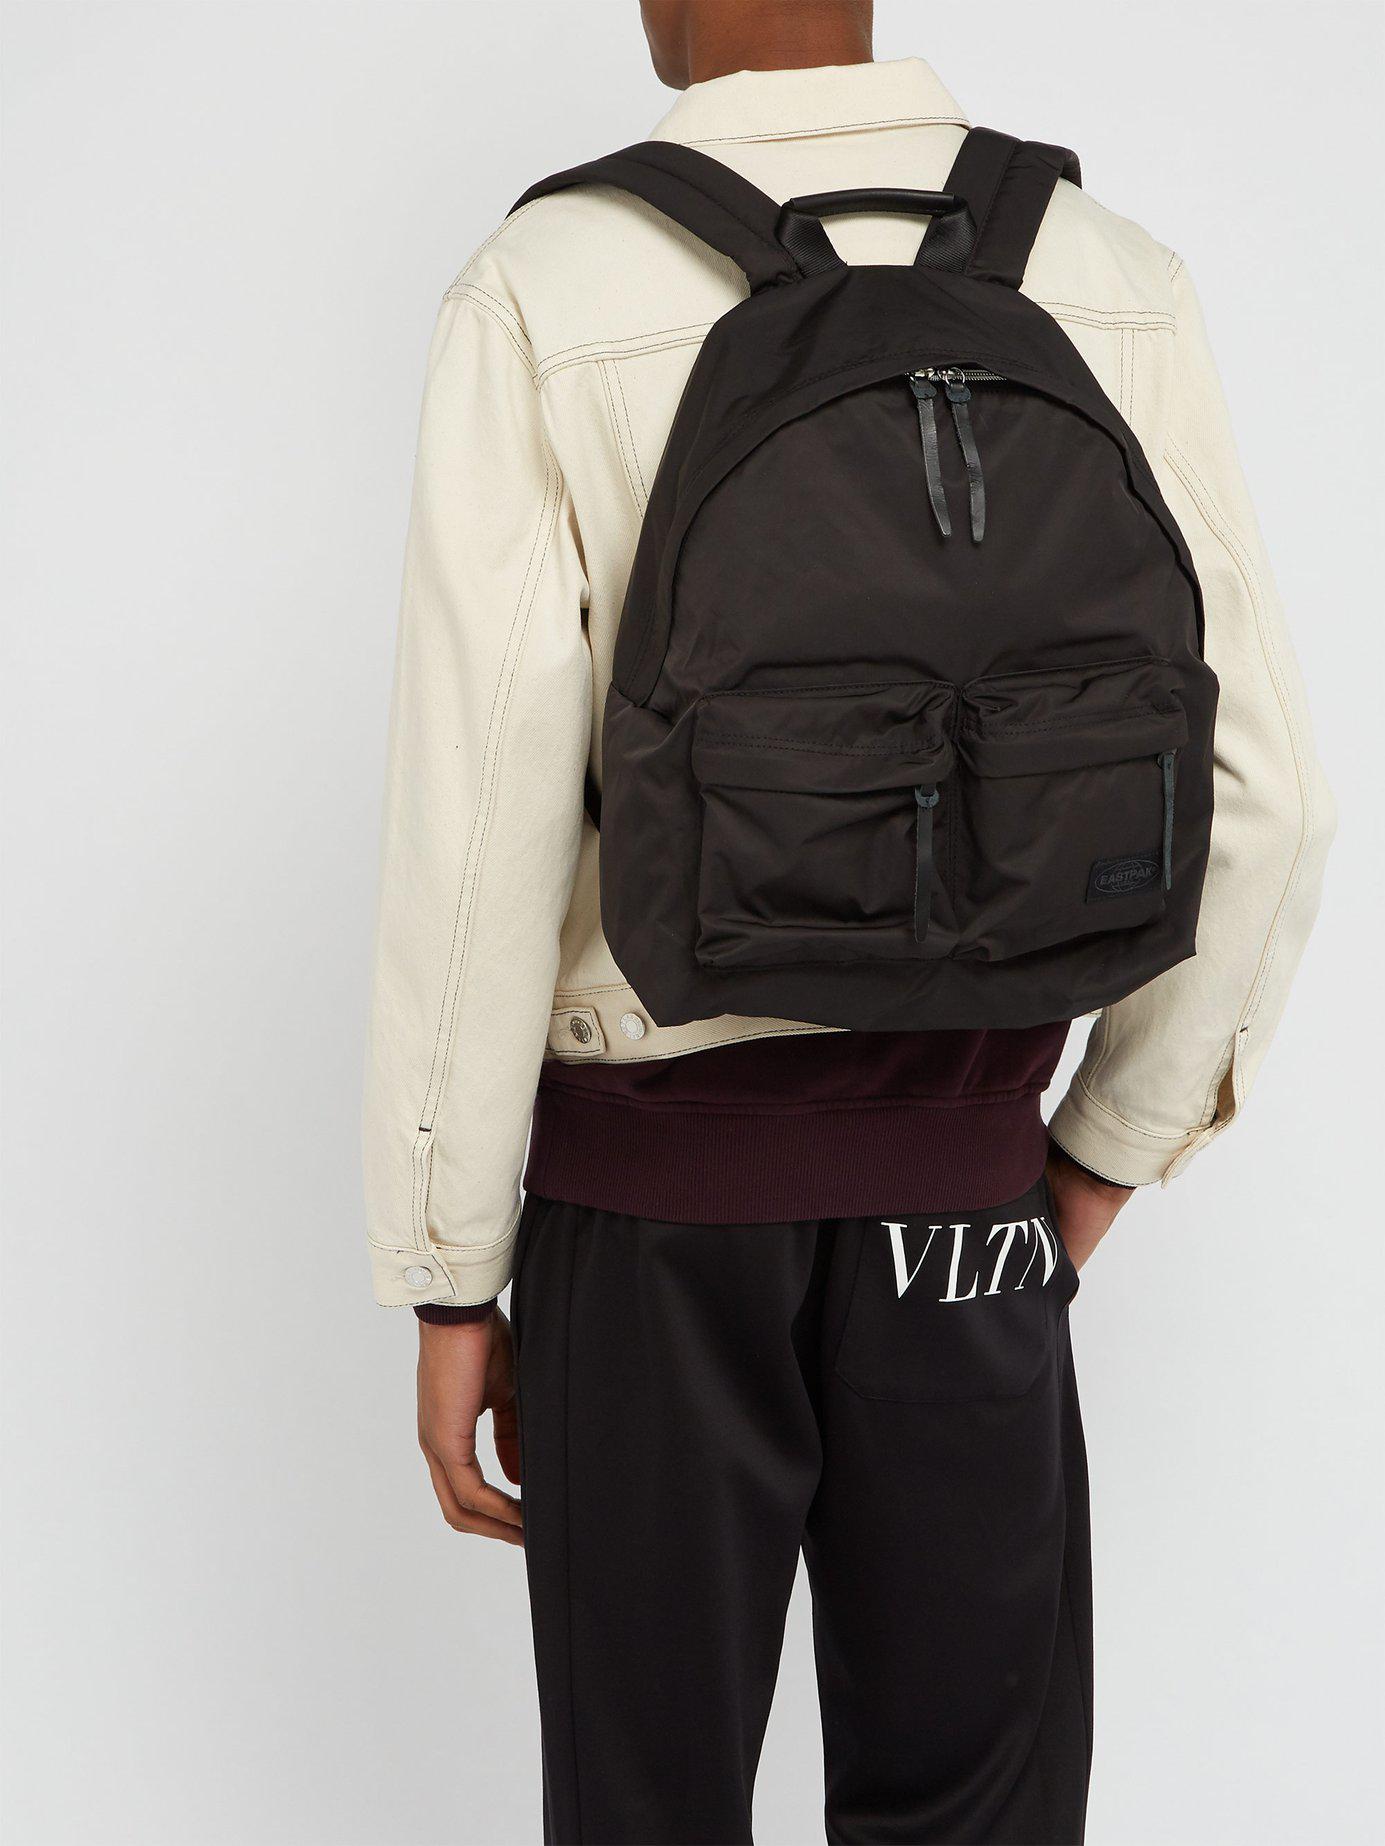 Eastpak Japan Padded Black Backpack for Men - Lyst